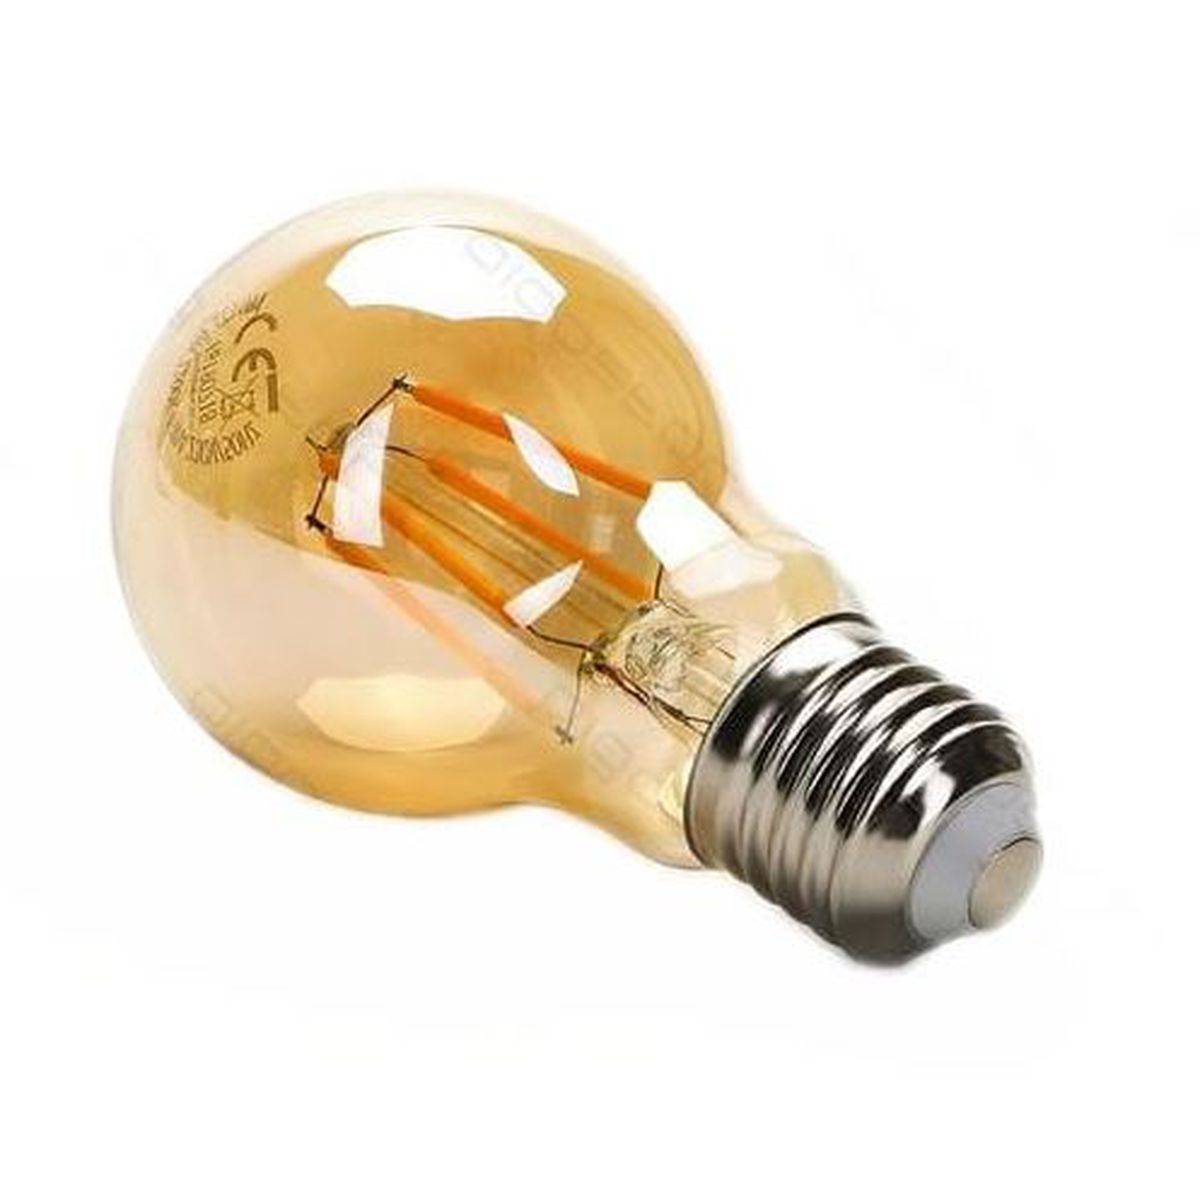 Ampoule LED A60 avec culot standard E14, et conso. de 4W